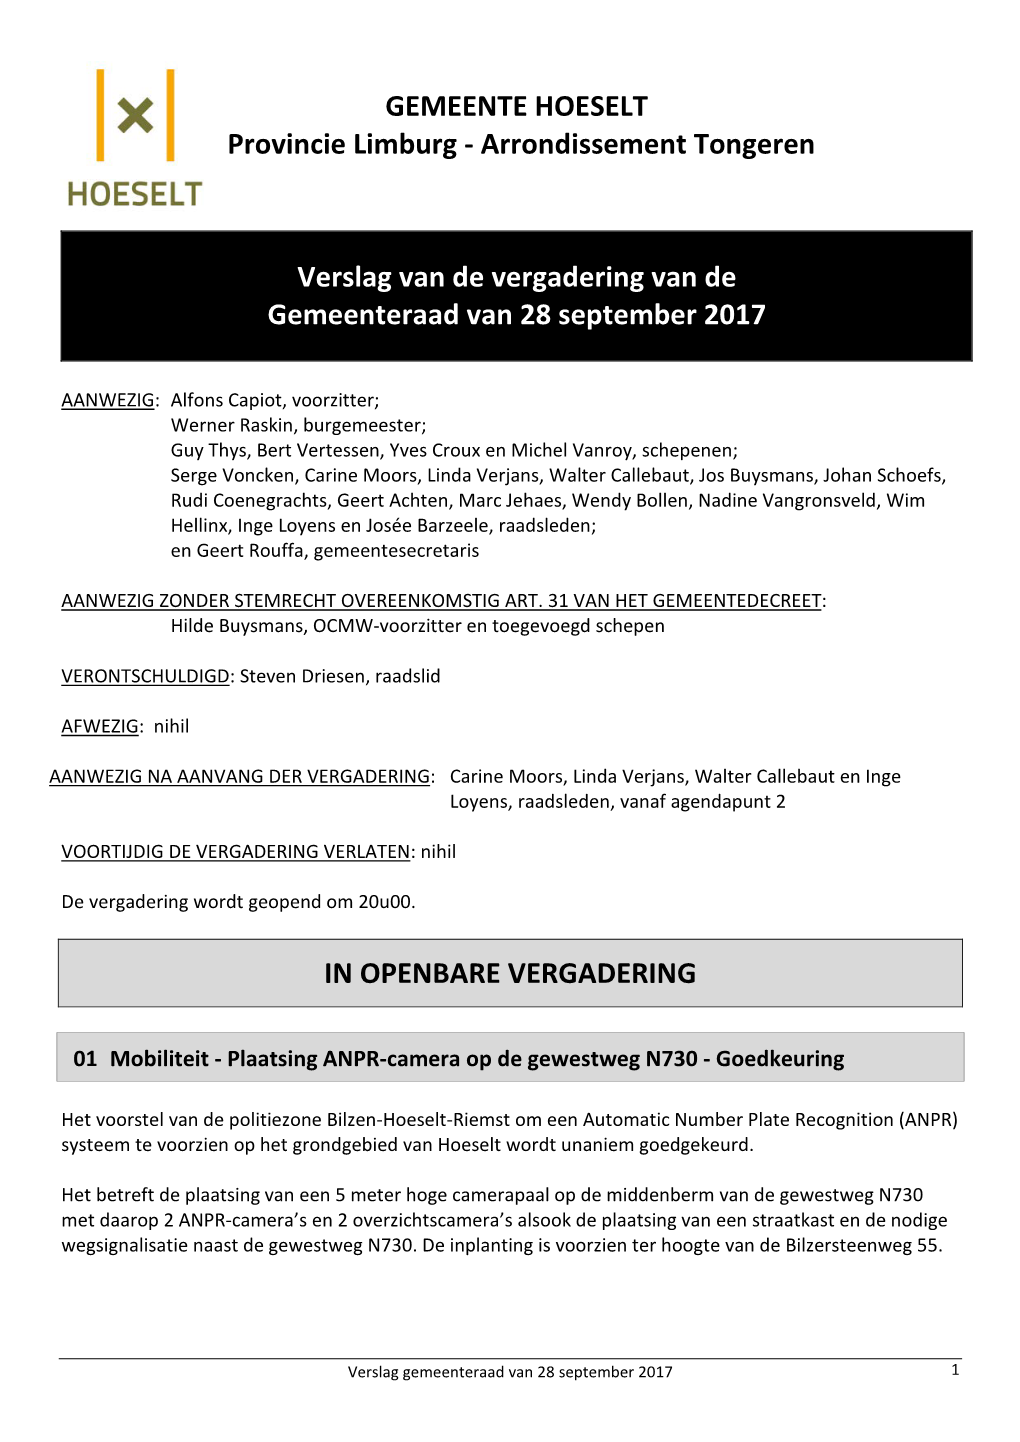 Verslag Van De Vergadering Van De Gemeenteraad Van 28 September 2017